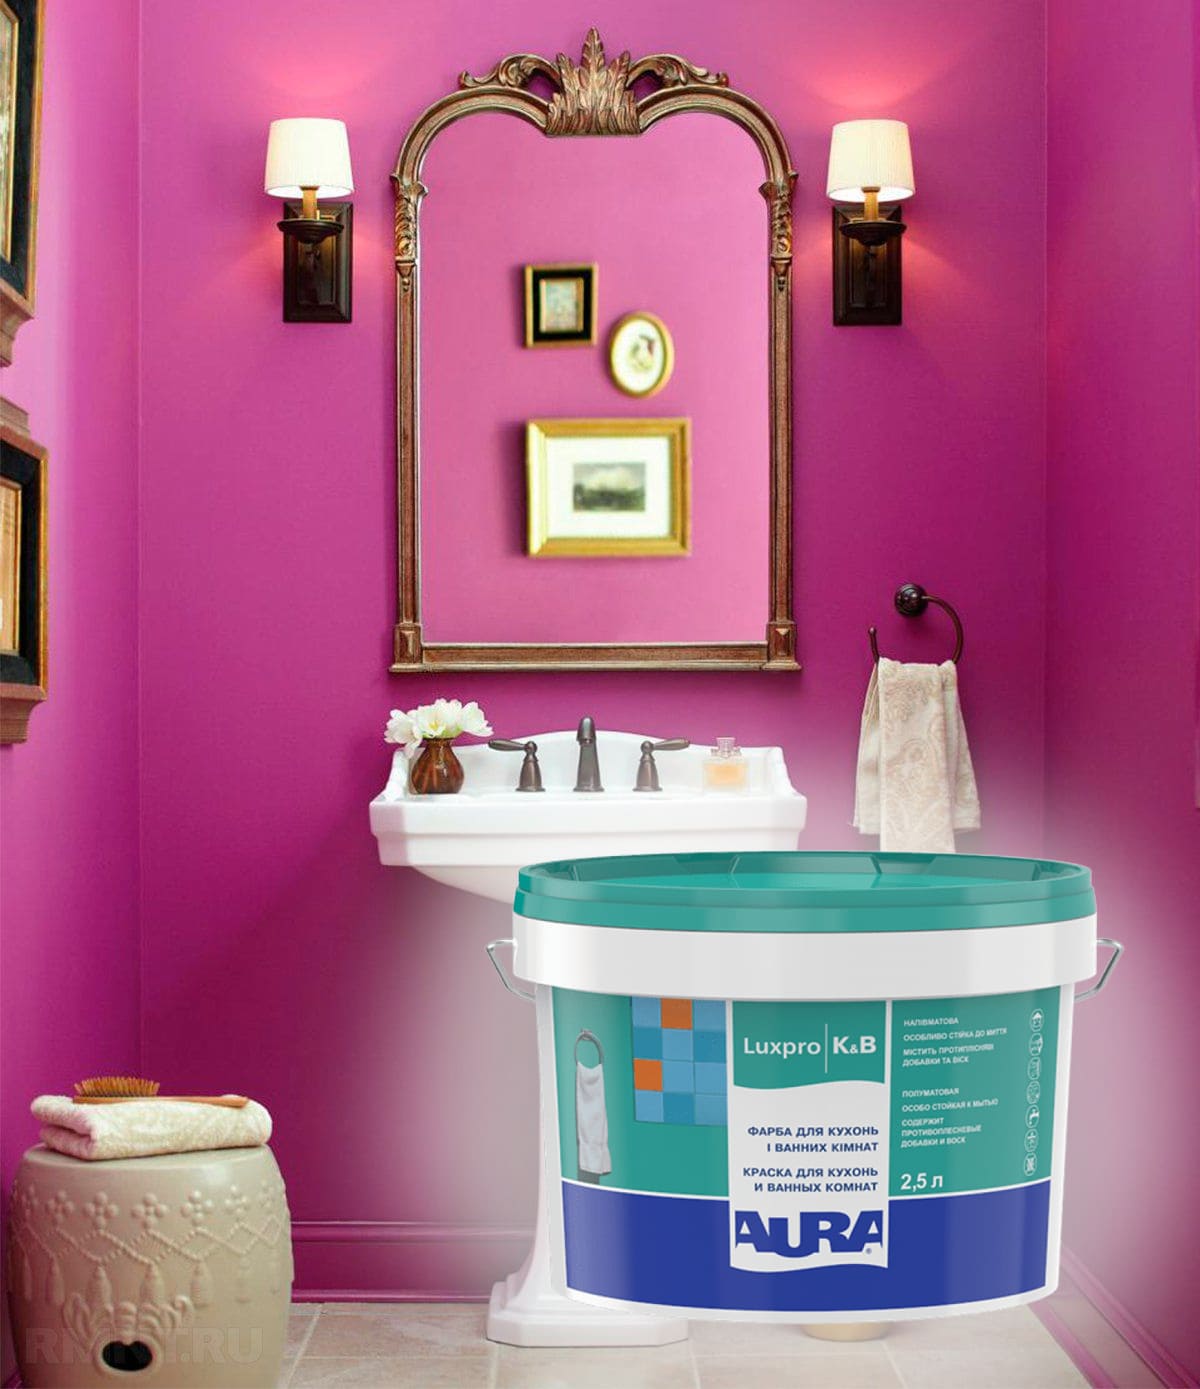 краска для ванных комнат Aura Luxpro K&B